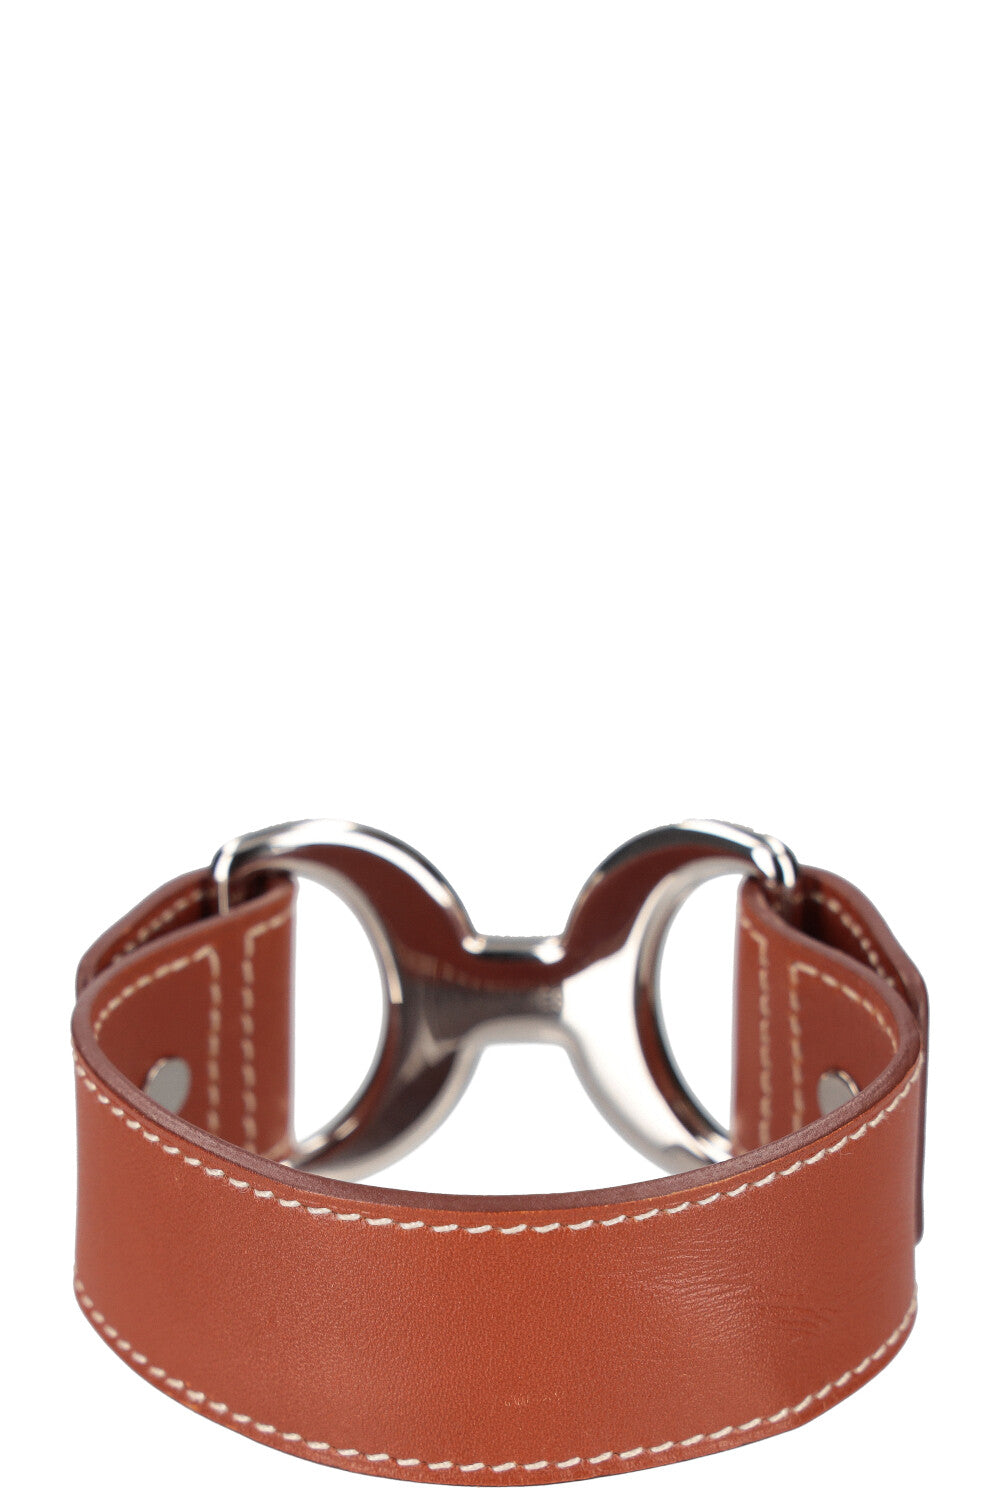 HERMÈS Pavane Bracelet Leather Brown